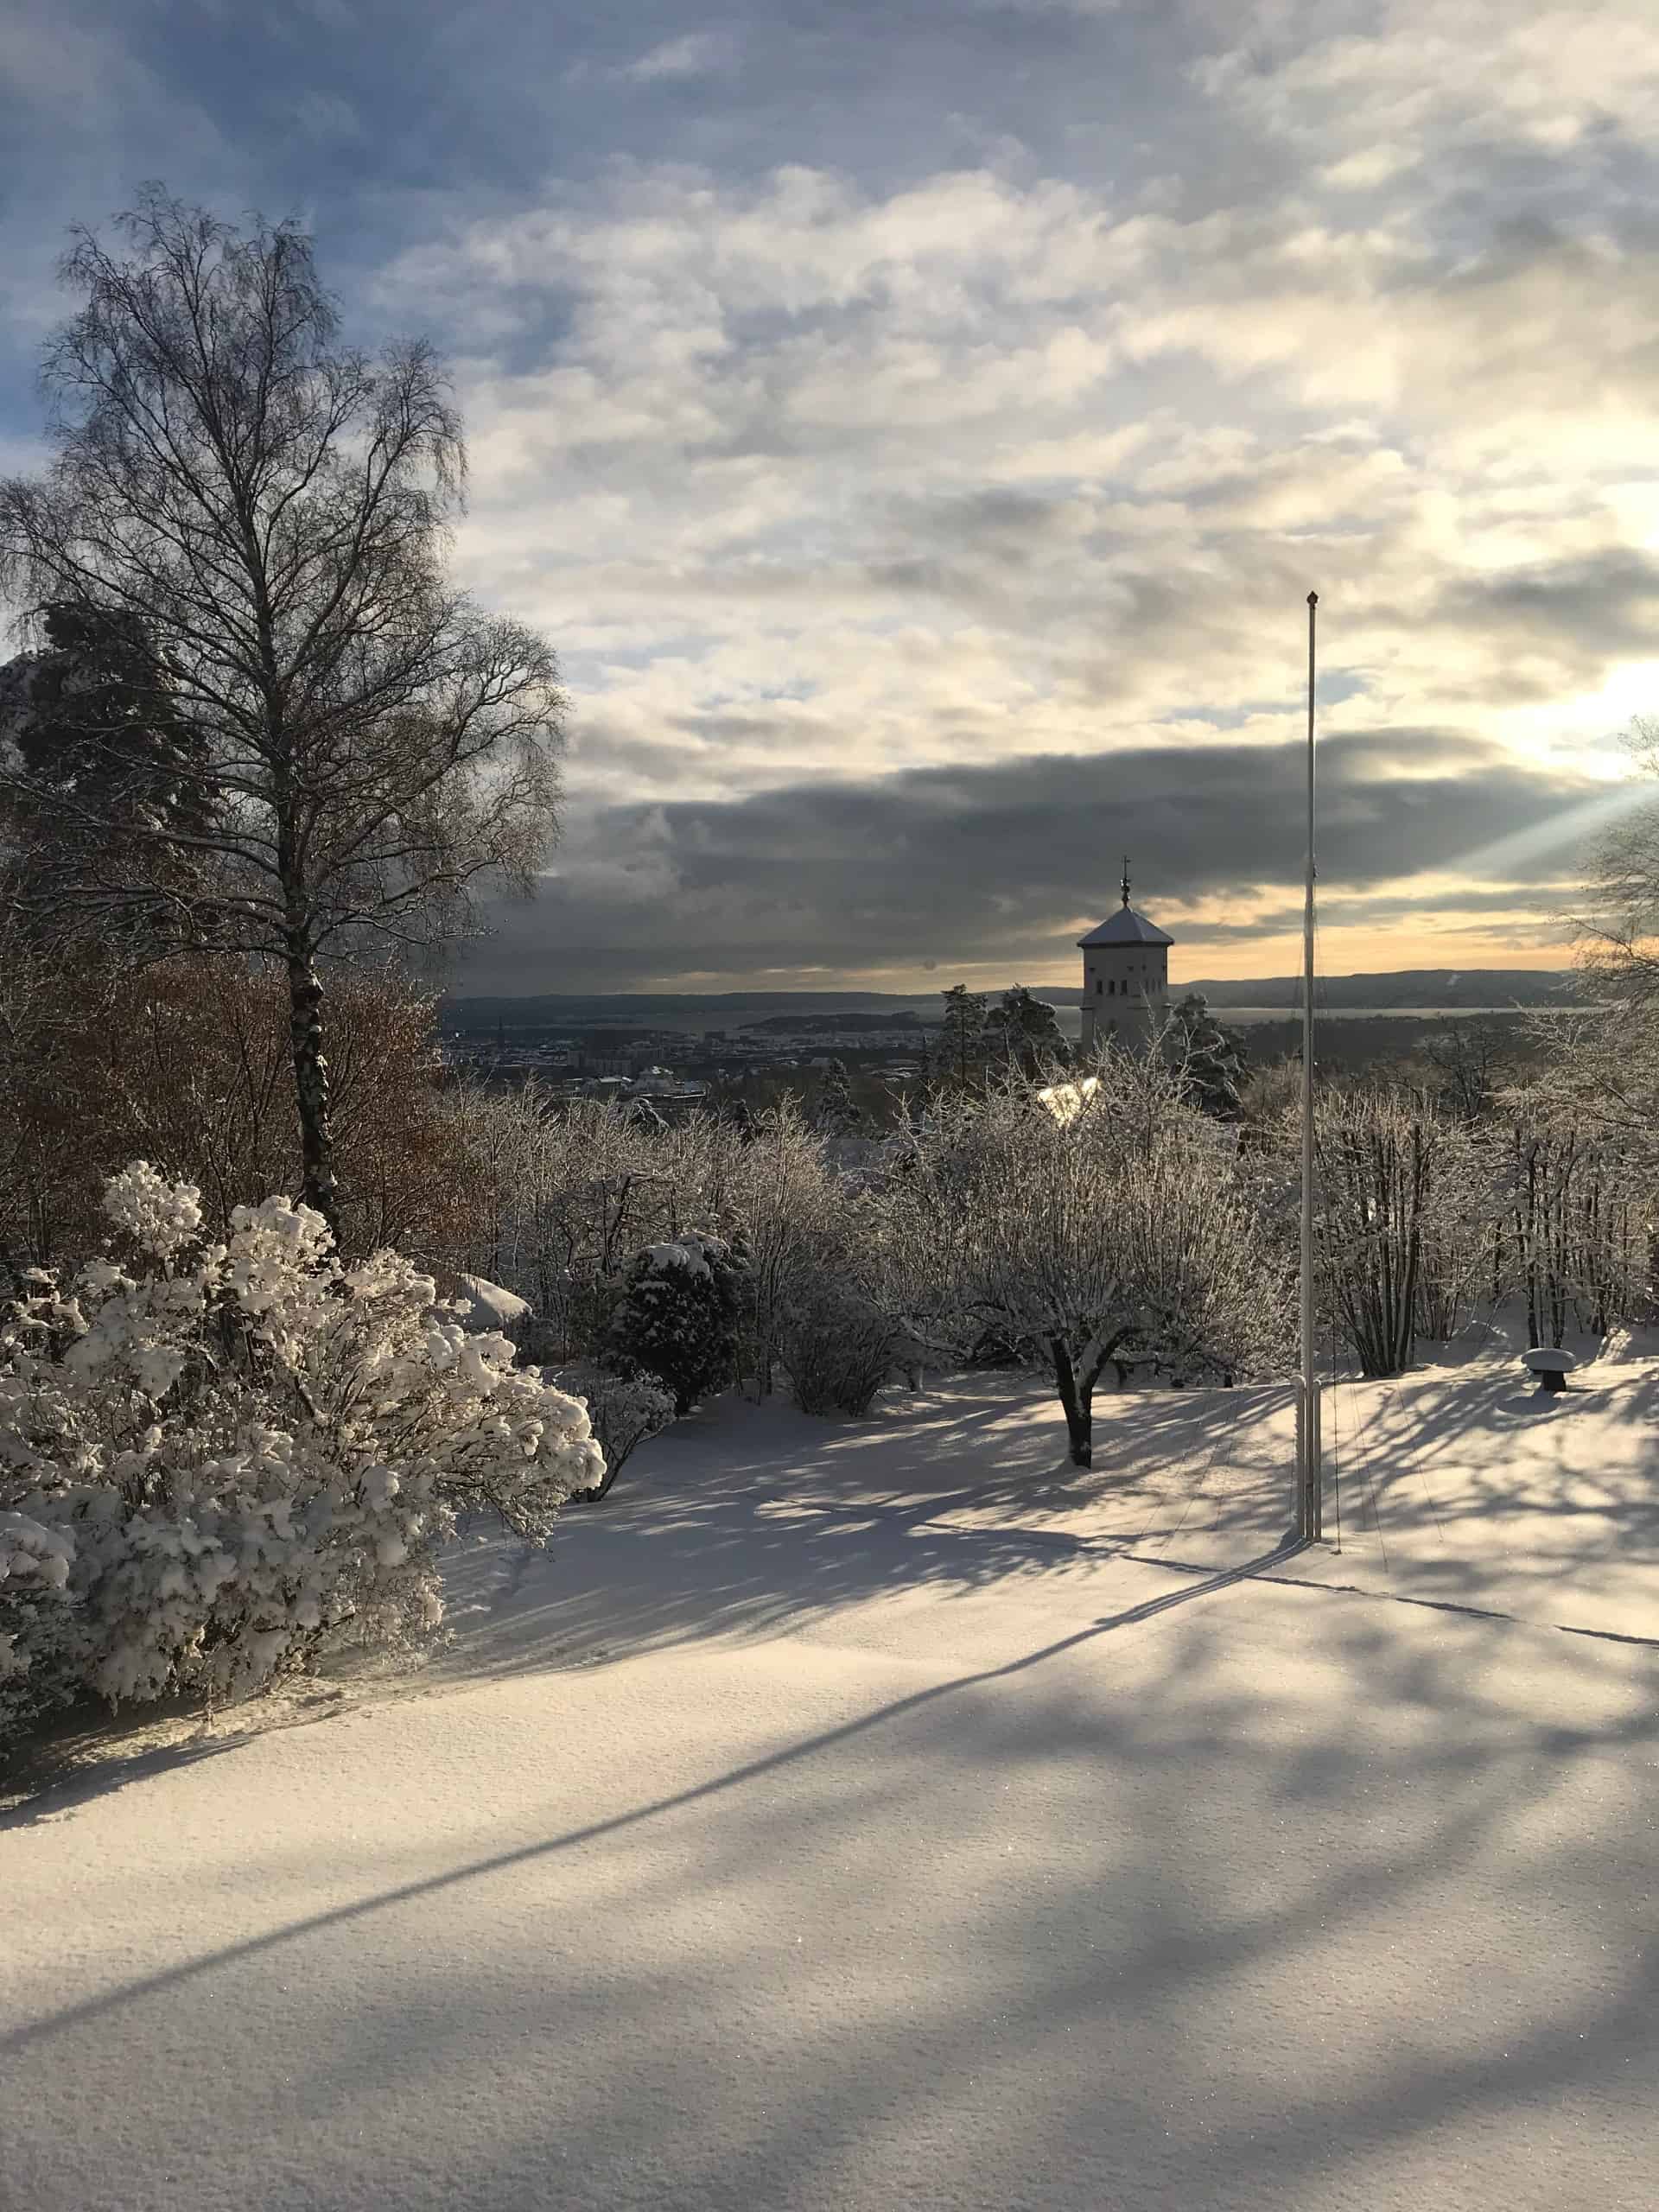 Hagen og utsikten i vinterlandskap